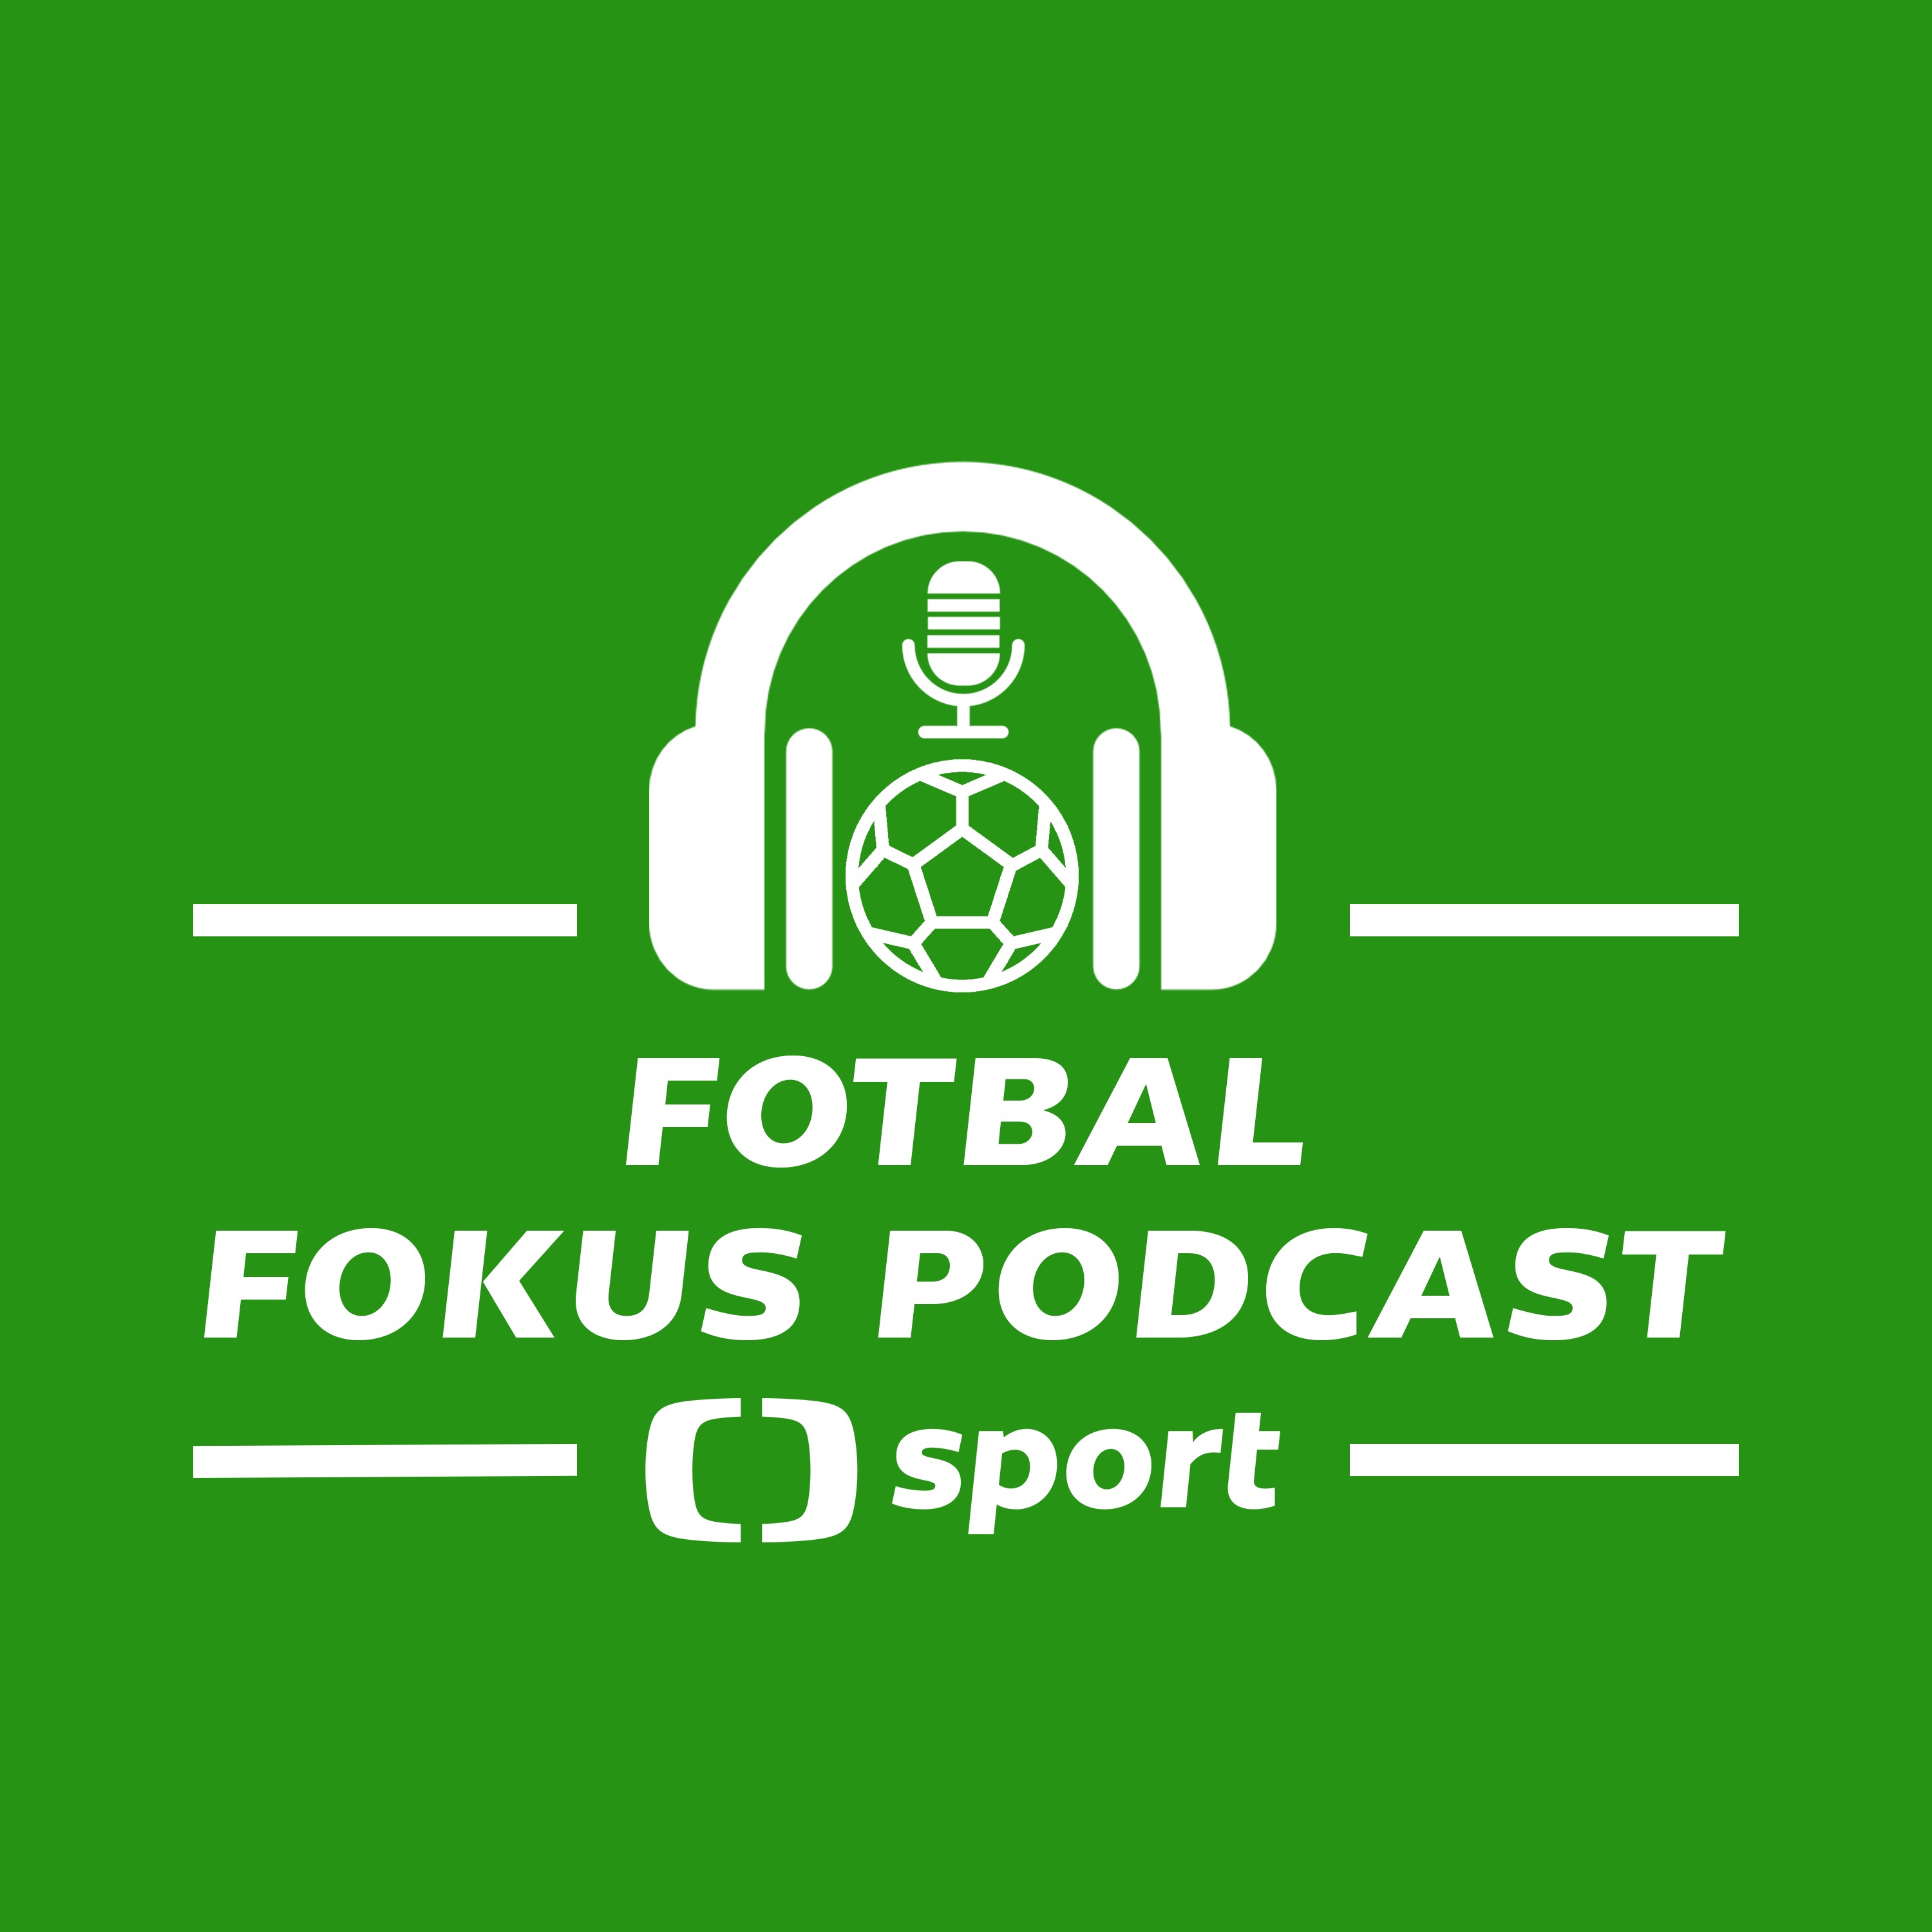 Fotbal fokus podcast: Priske do Feyenoordu? Koho nominovat na ME? + Nej sezony, Baník v Evropě